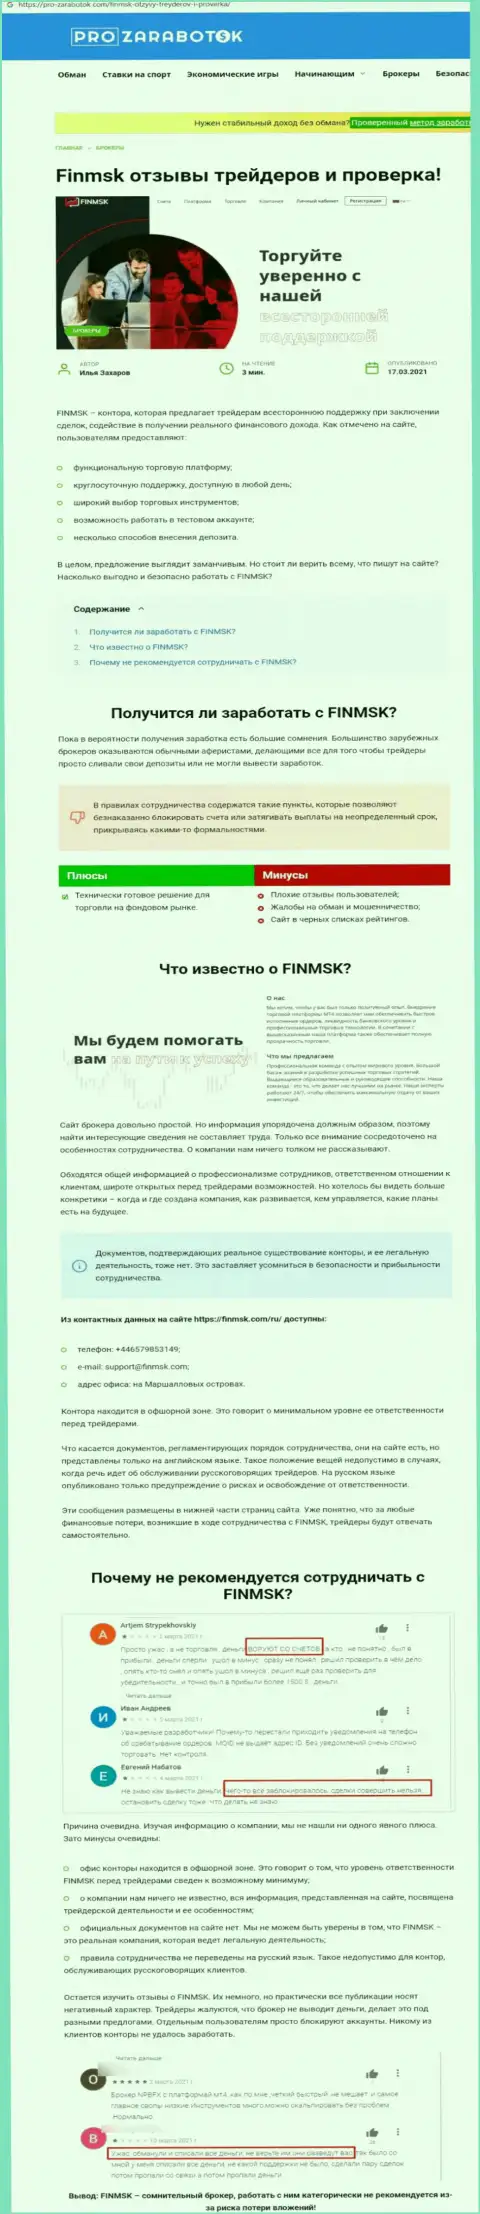 Чем грозит сотрудничество с конторой FinMSK ??? Обзорная публикация о интернет-мошеннике